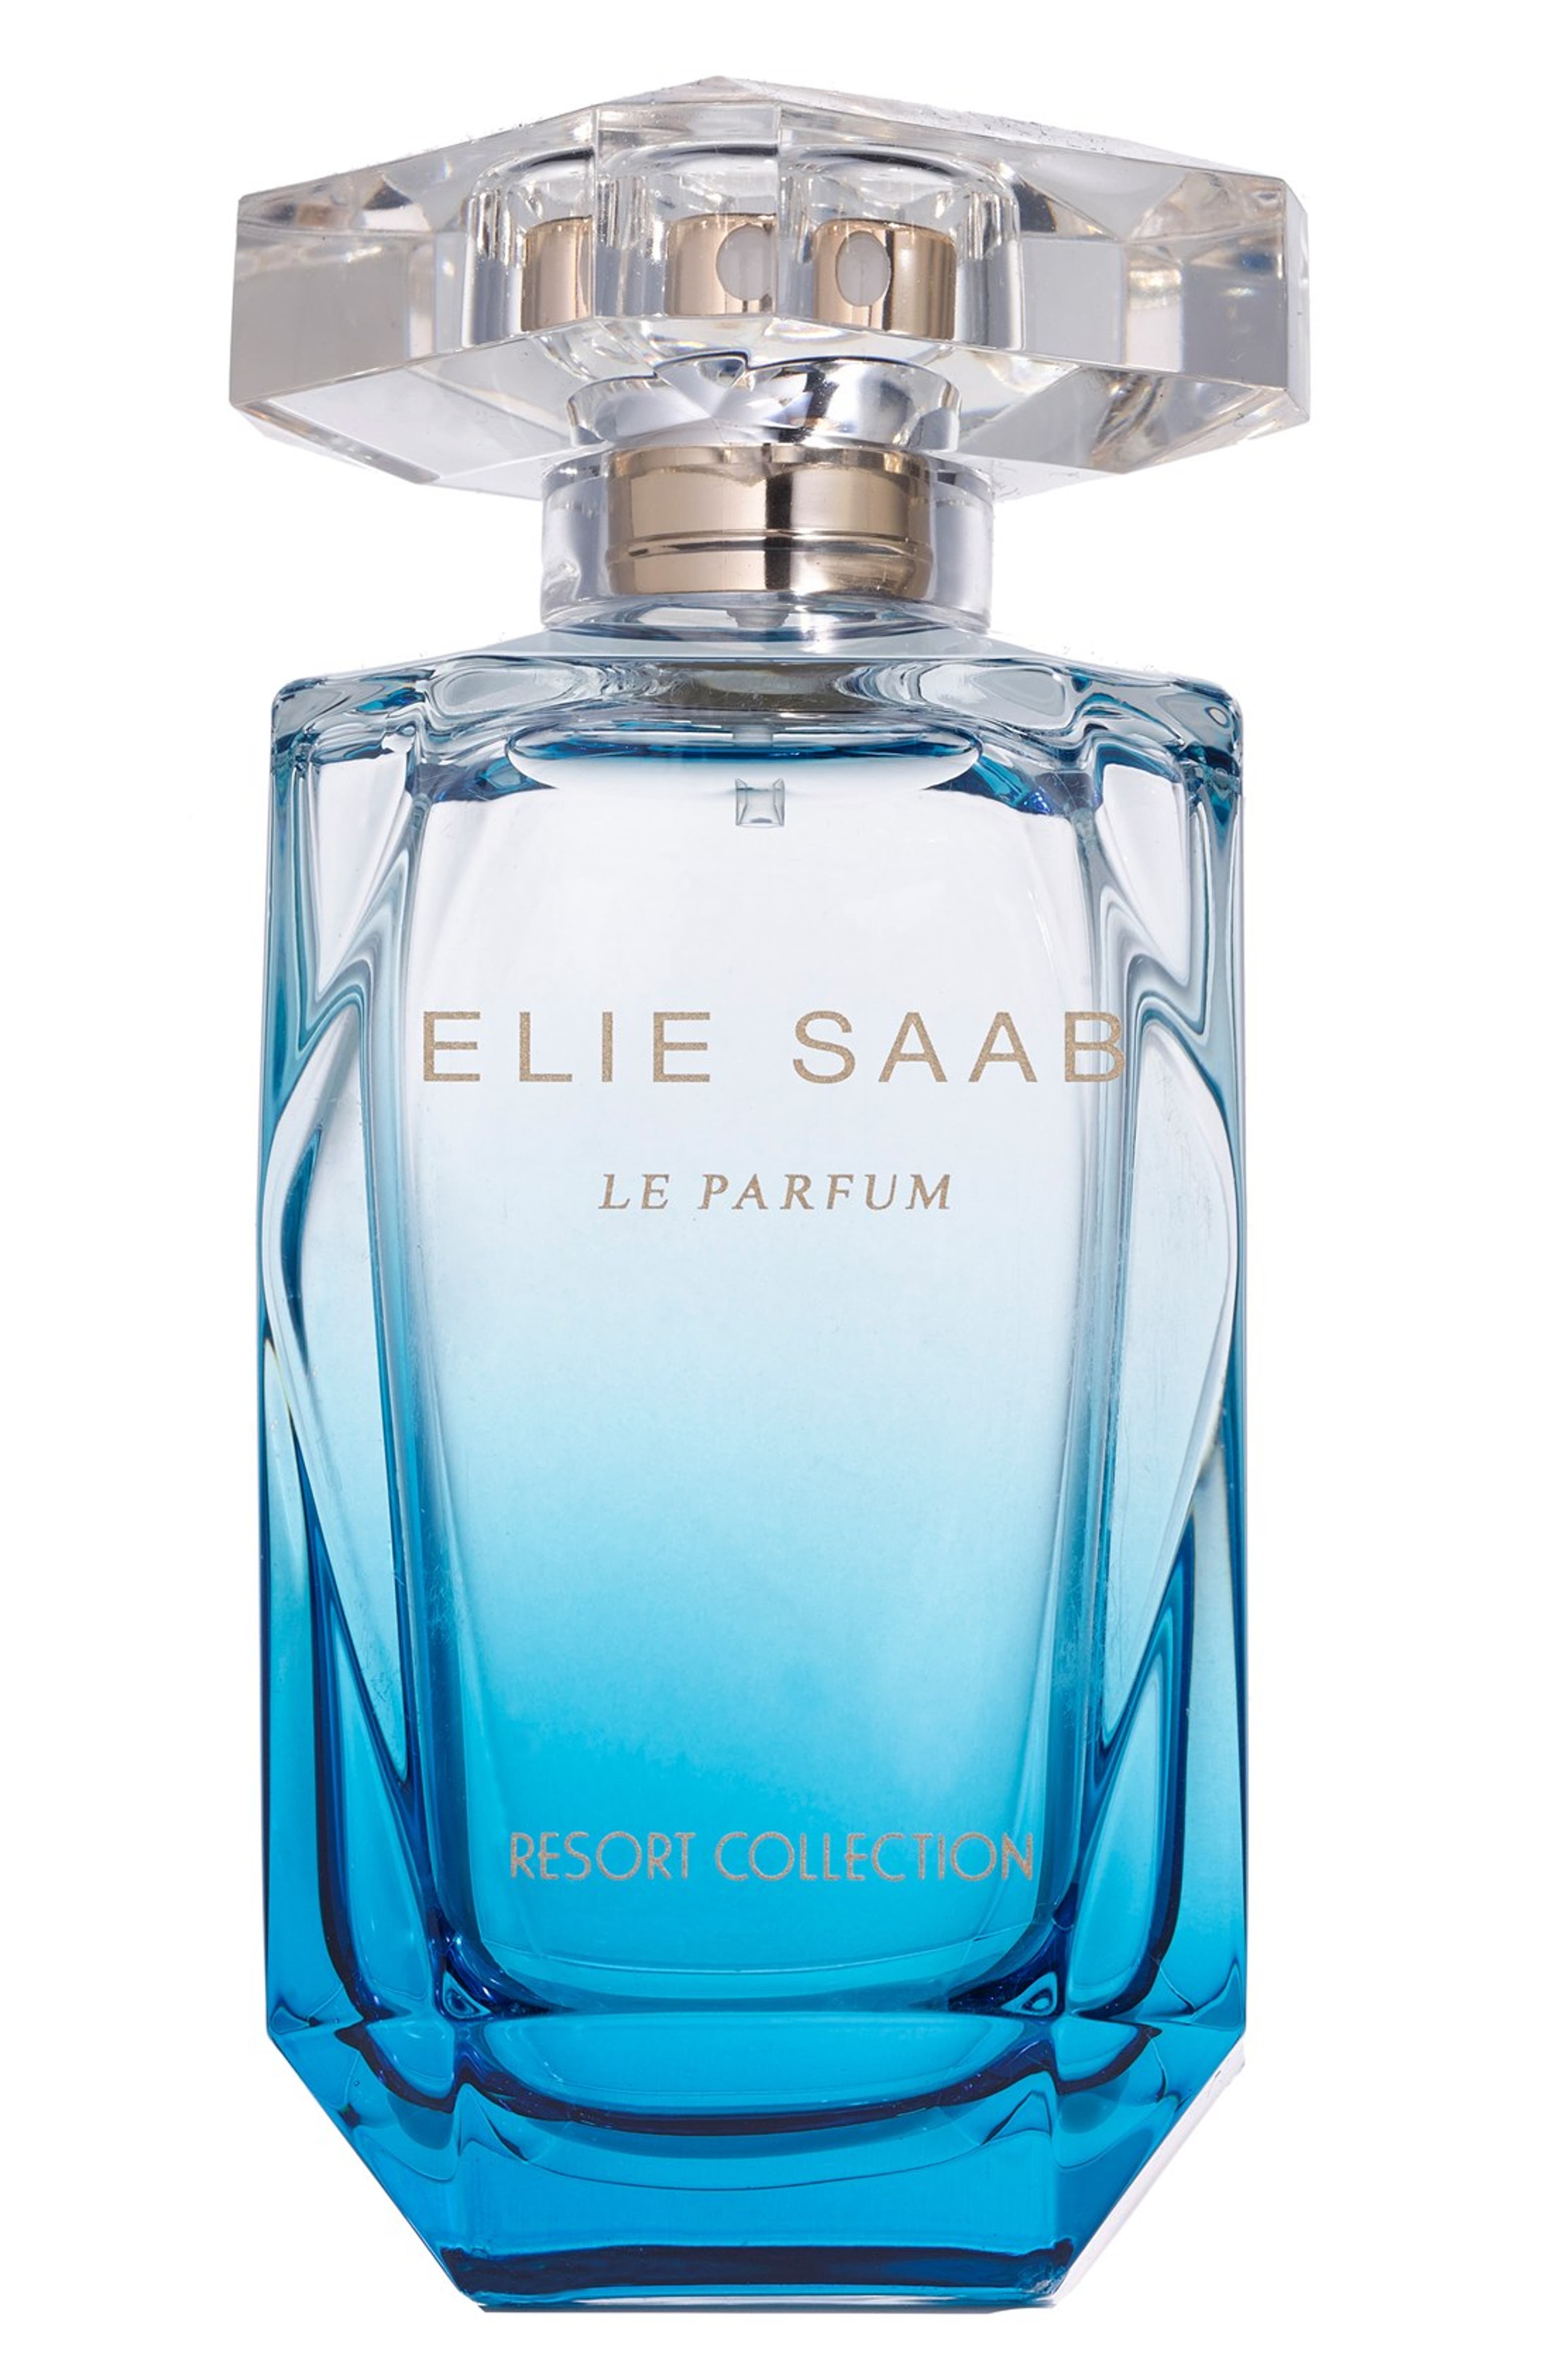 Elie Saab 'Le Parfum' Resort Collection Eau de Toilette Spray (Limited ...